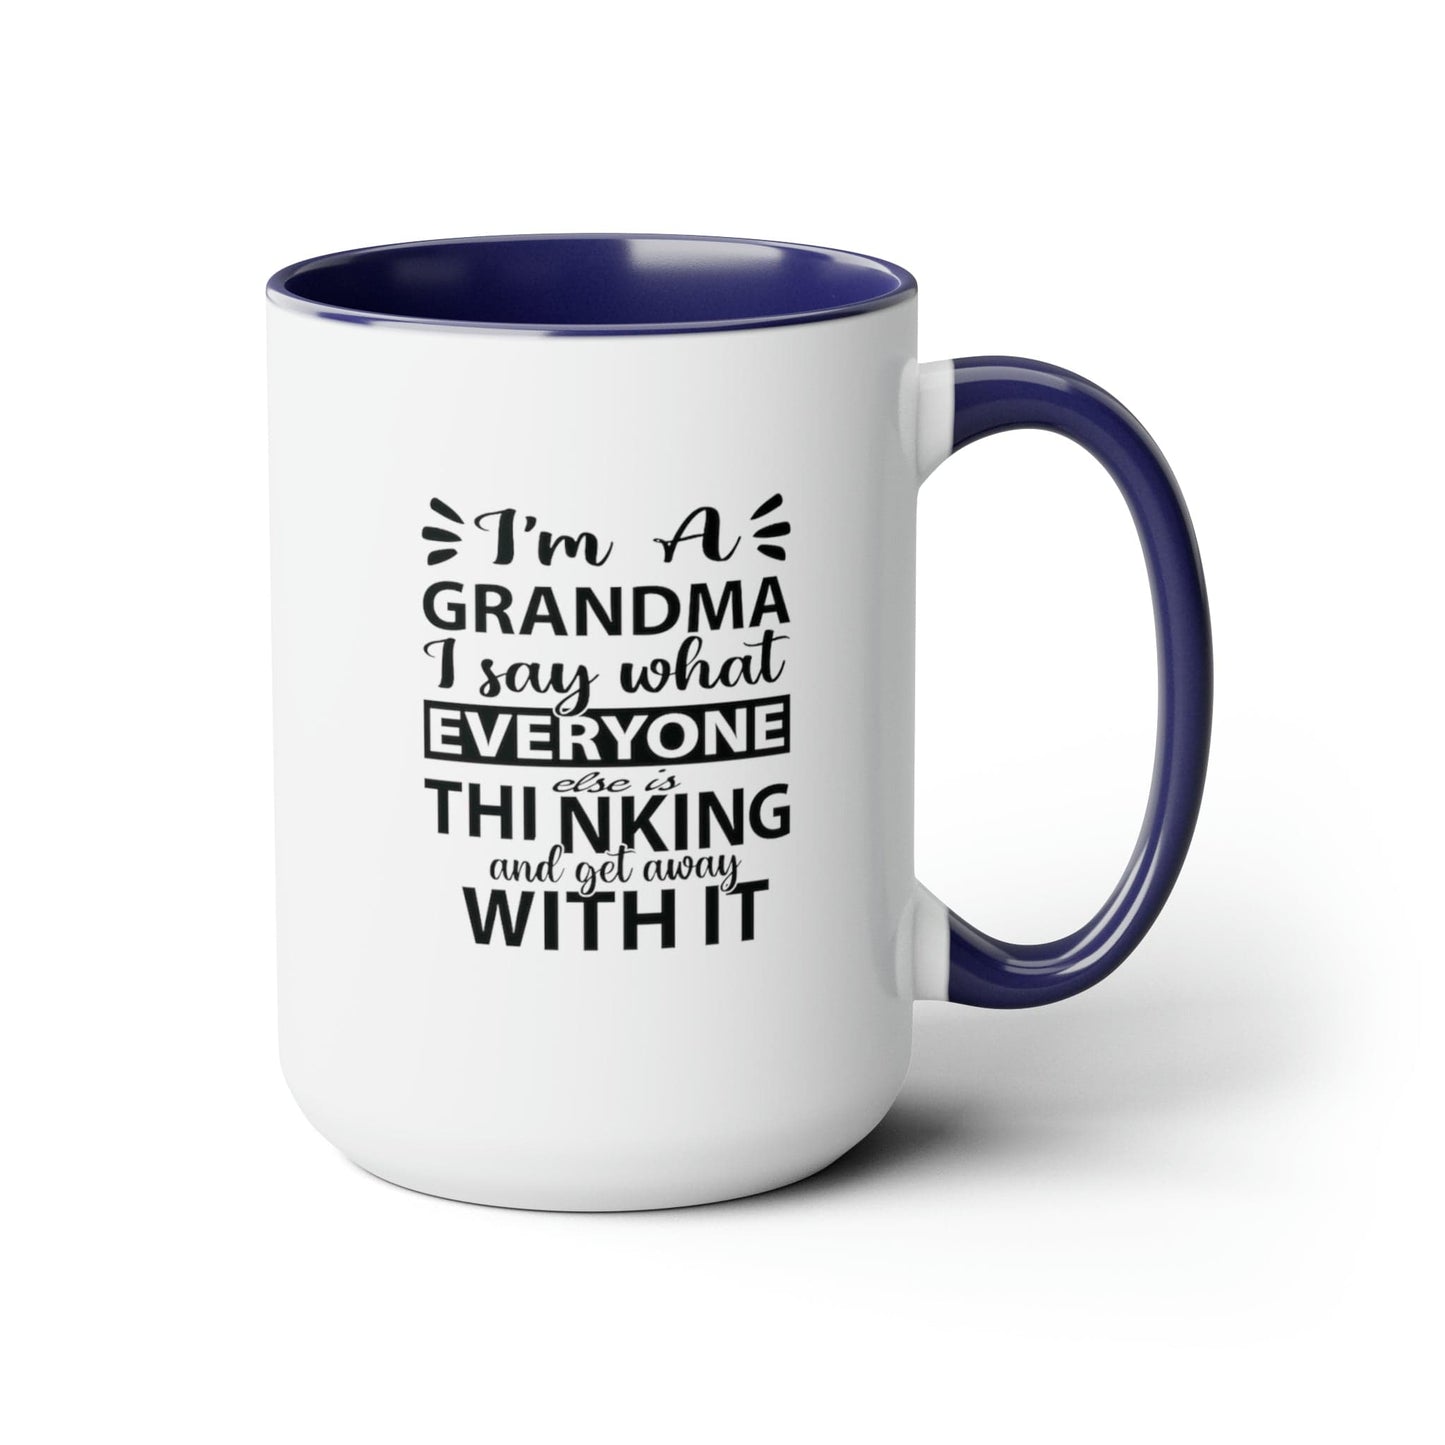 I'm A Grandma Two-Tone Coffee Mugs, 15oz